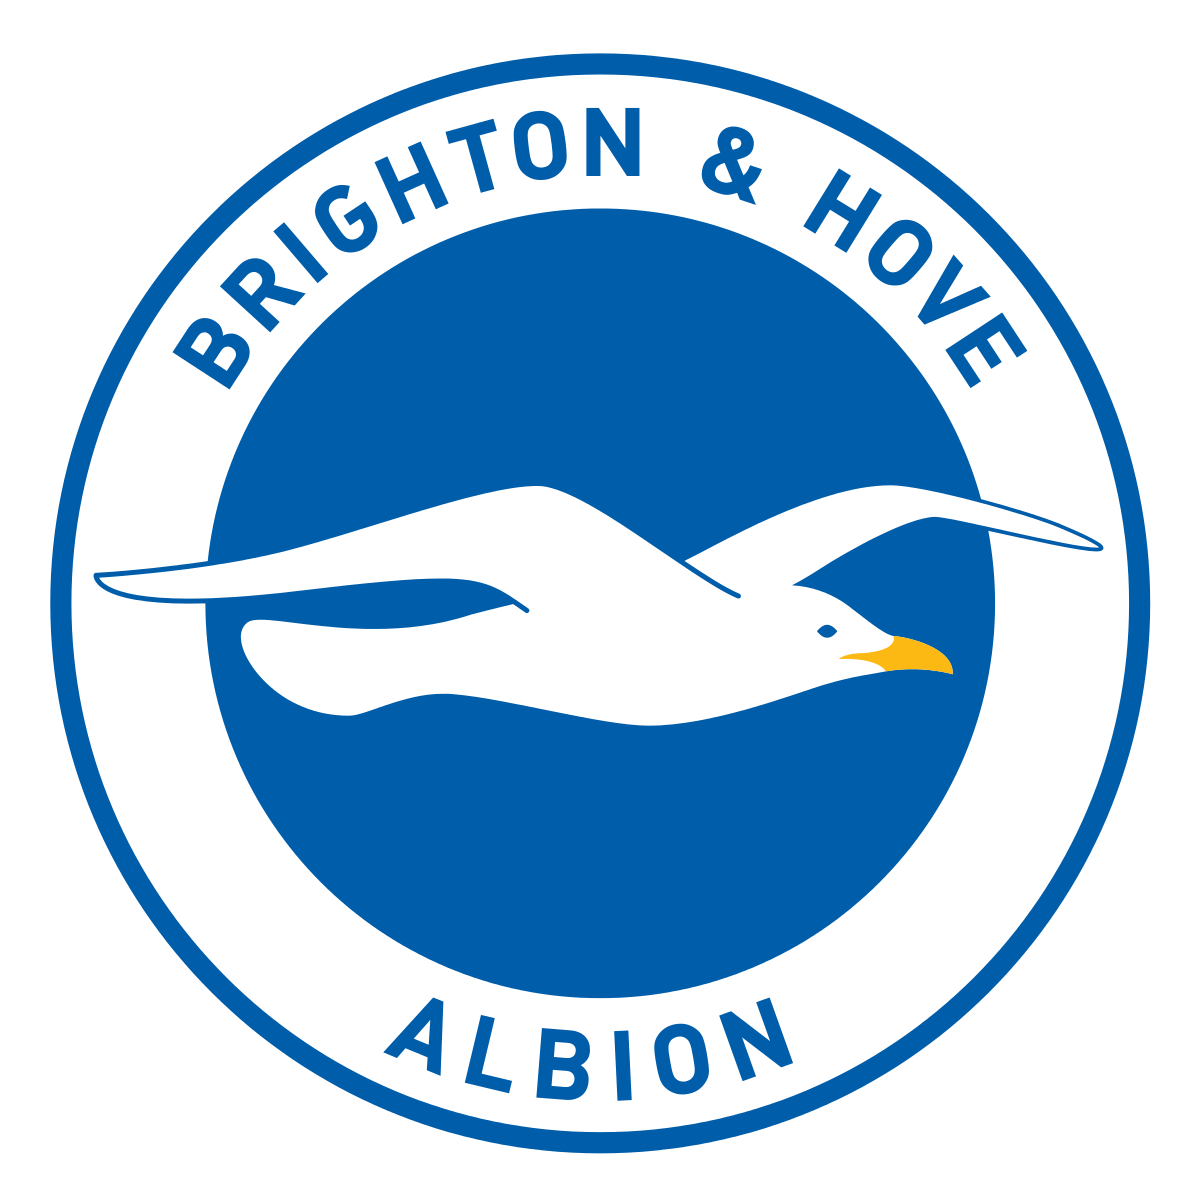 Brighton and Hove Albion Logo - Brighton & Hove Albion F.C.